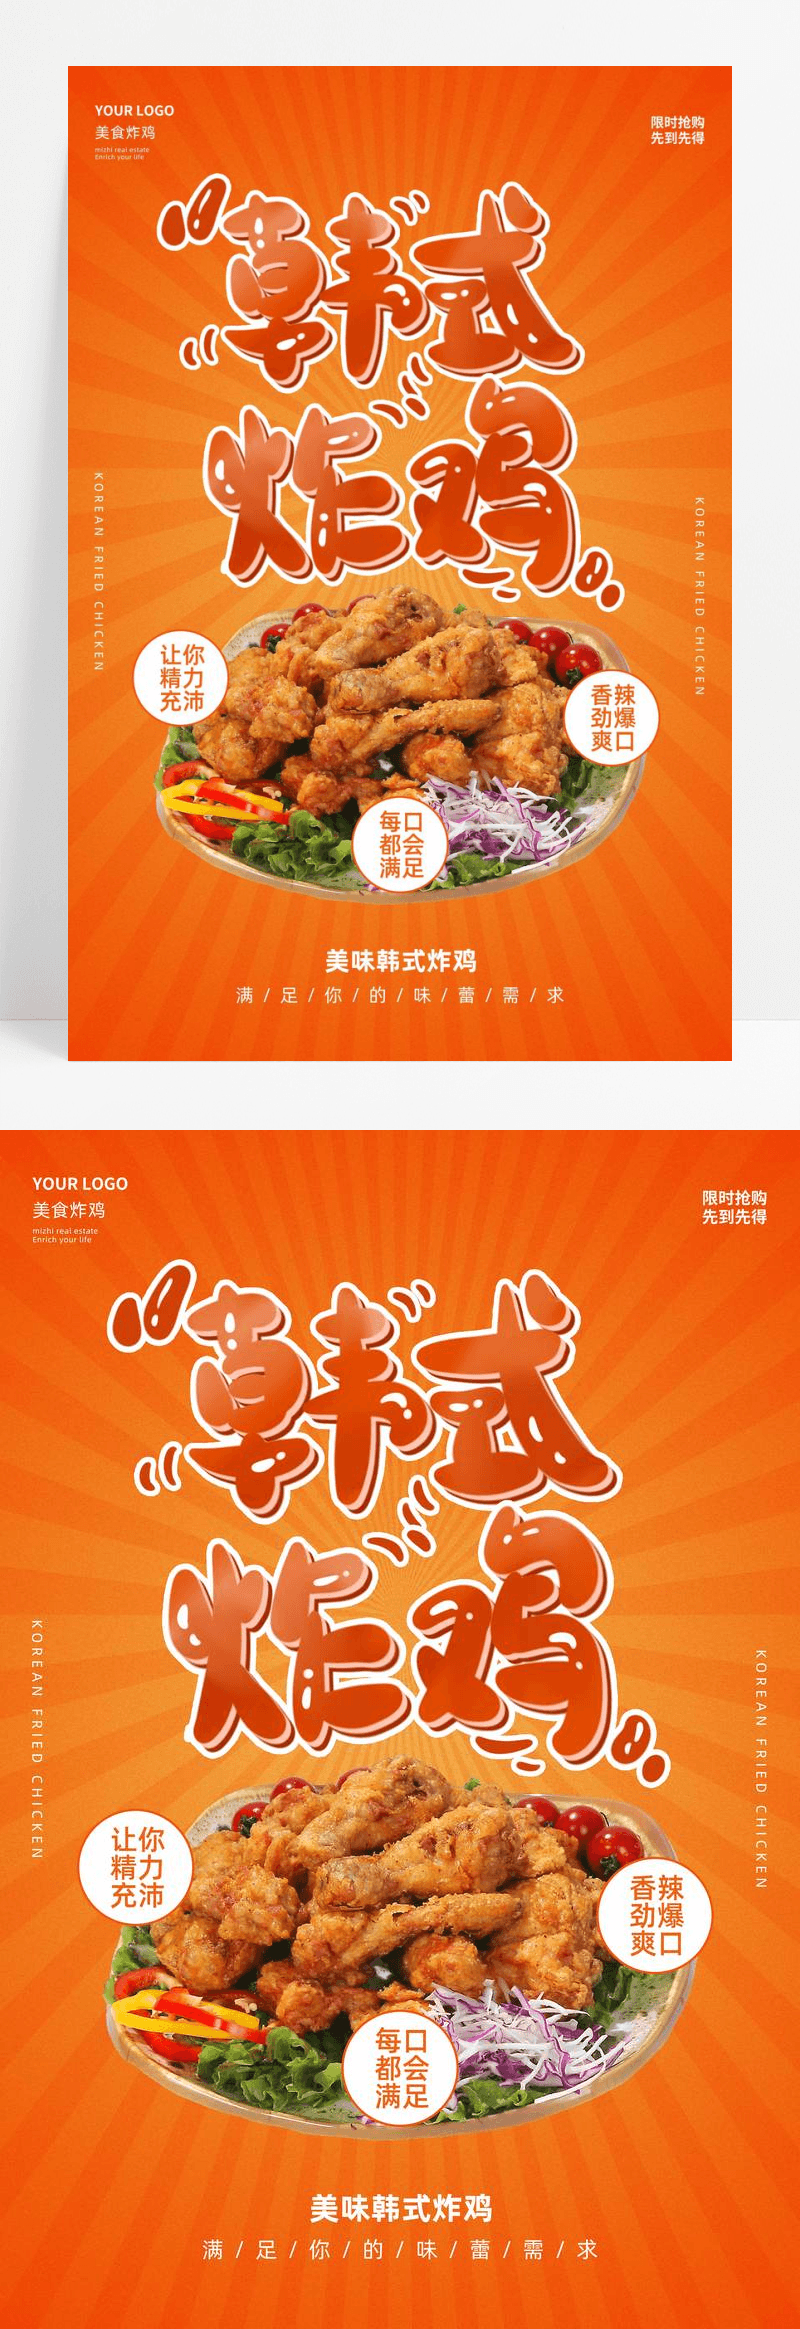 黄色创意韩式炸鸡活动促销美食餐饮宣传海报